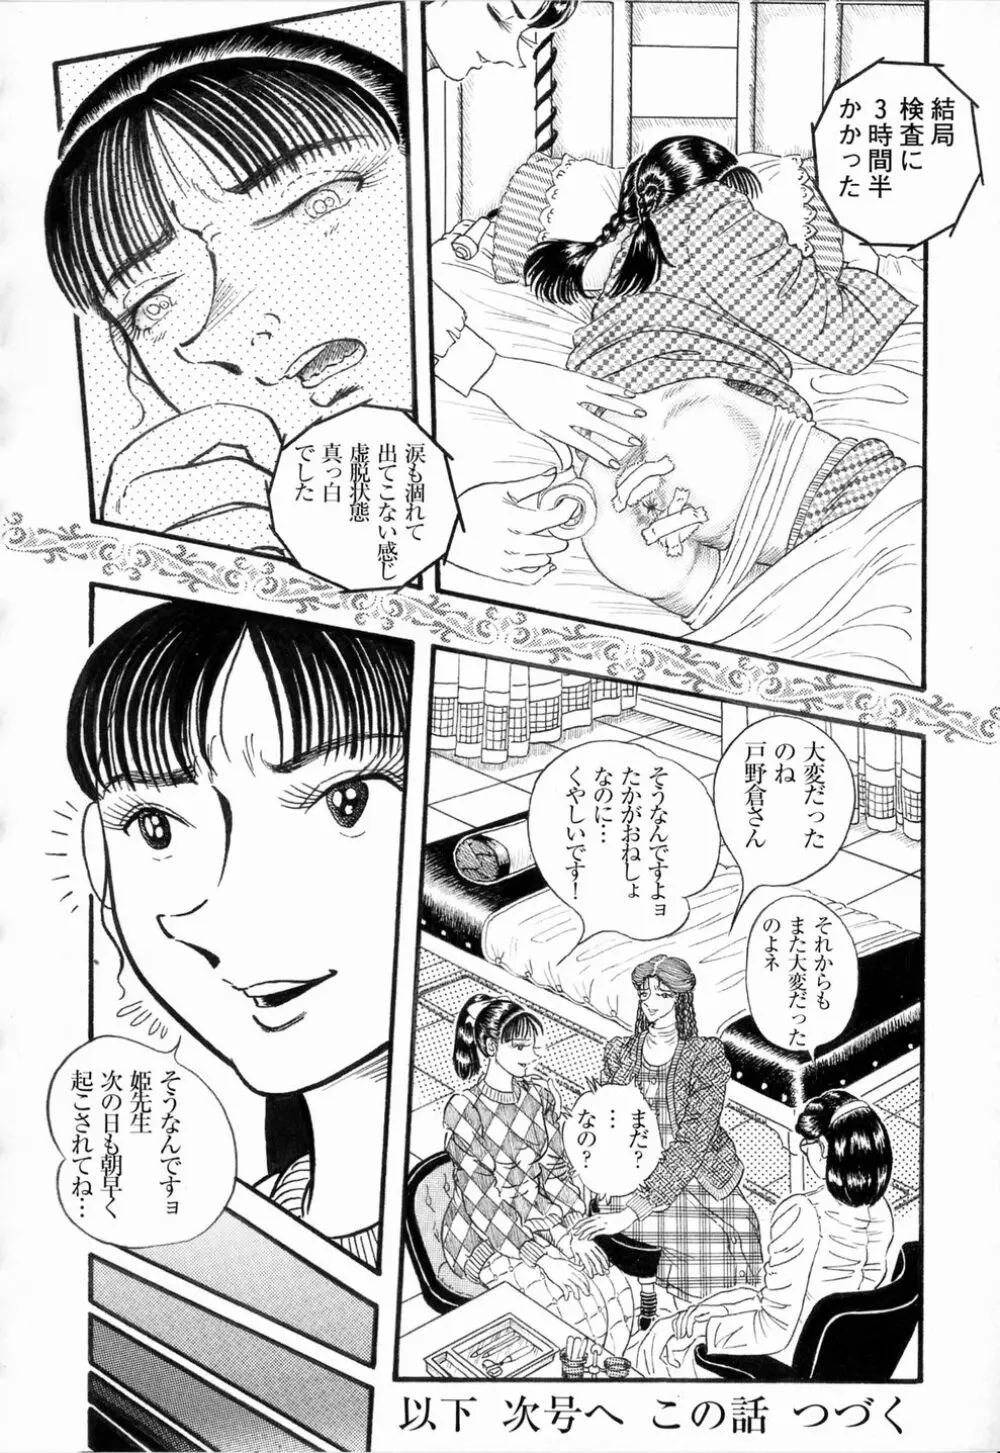 Hashimoto Iin Shinsatsu Note – Yuuko no Jijou Nami no Jijou 16ページ